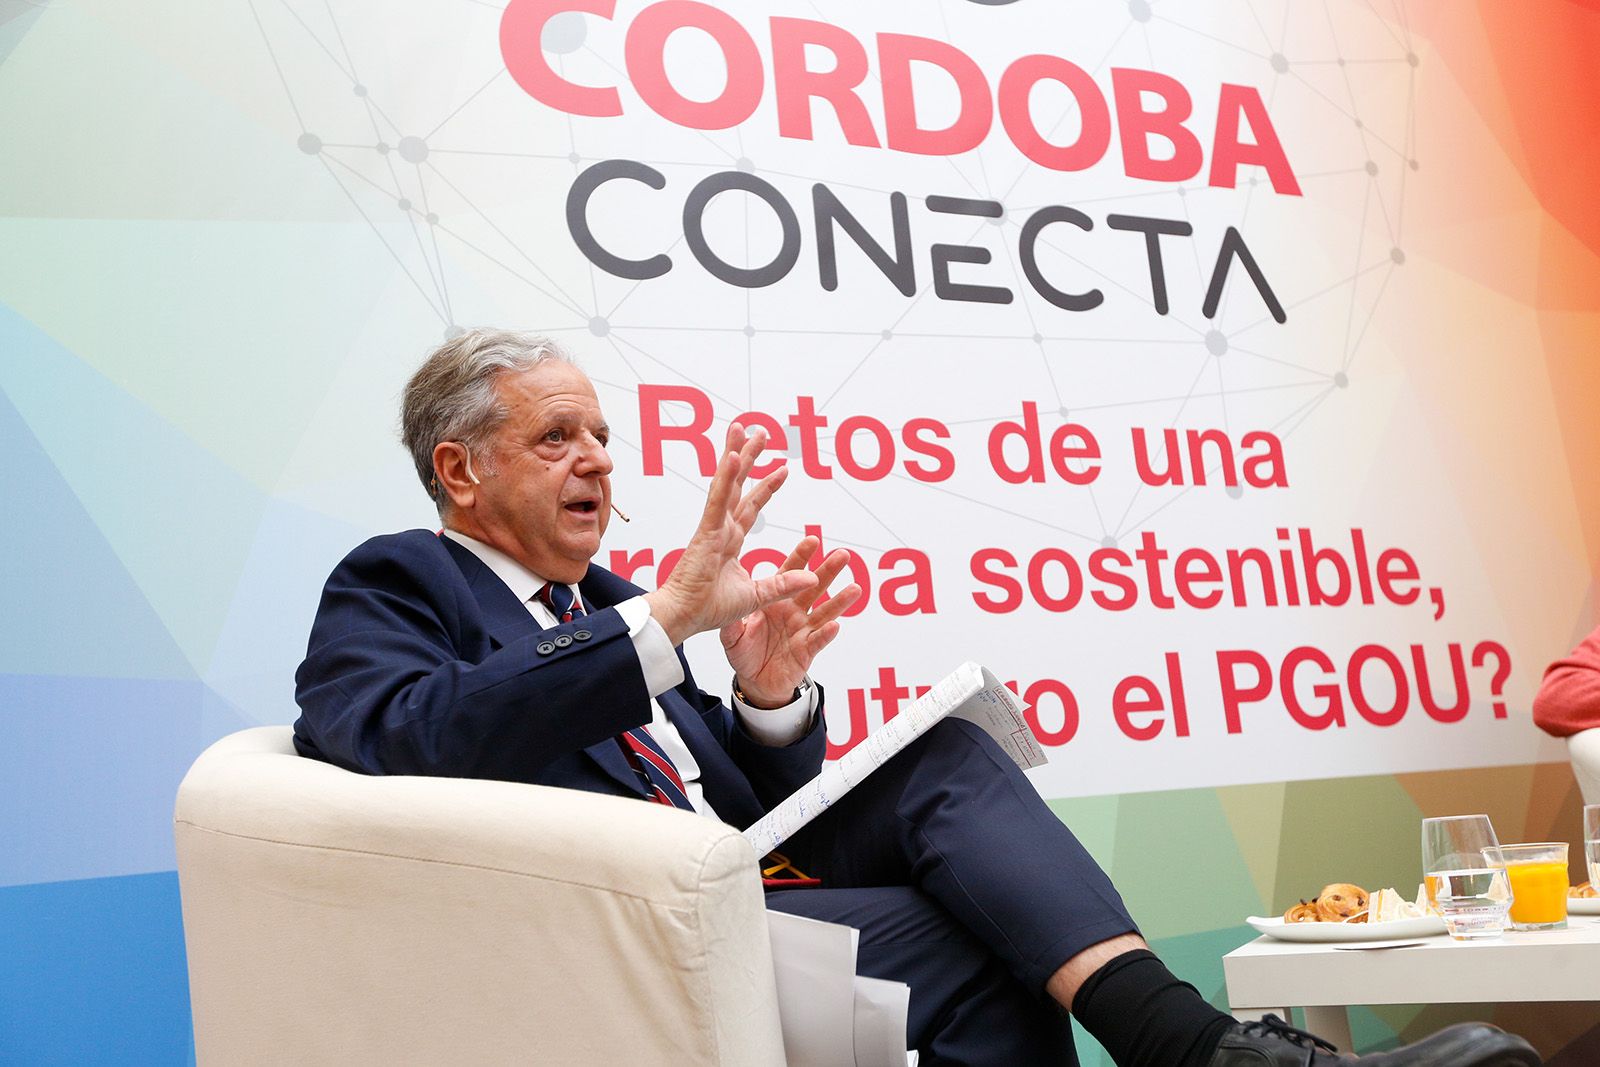 Córdoba Conecta analiza los retos de la Córdoba sostenible desde el punto de vista urbanístico